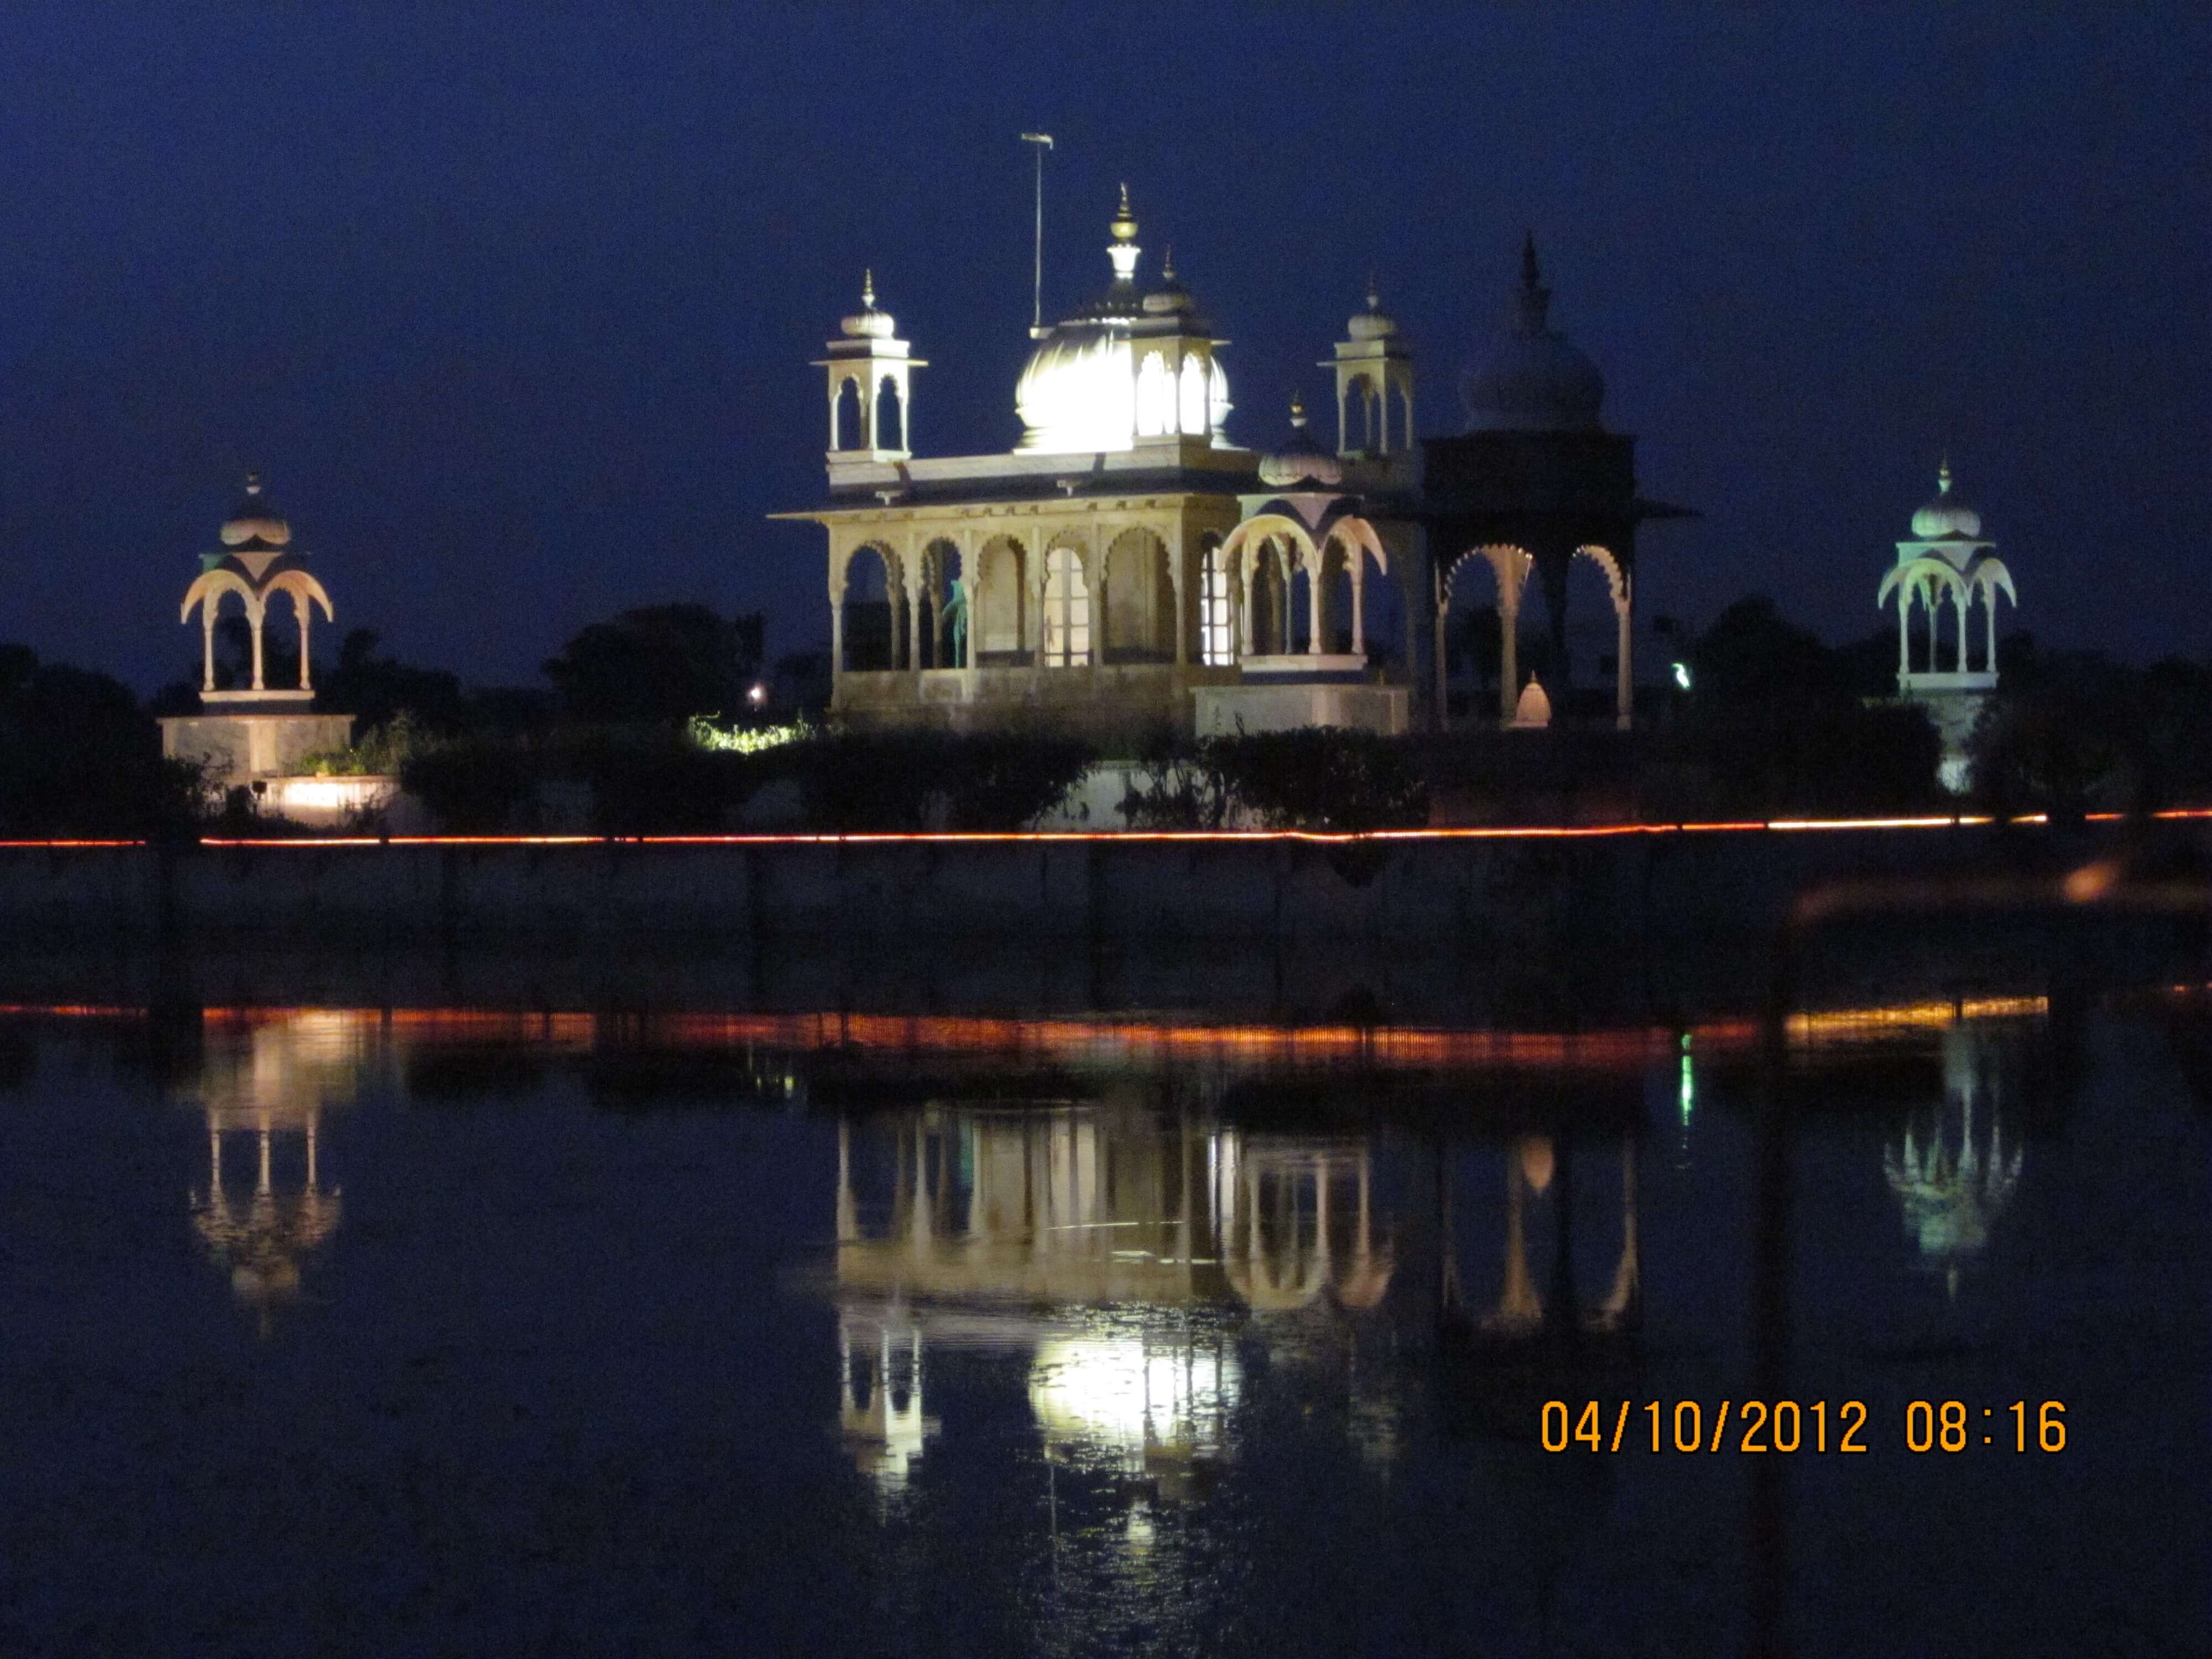 הארמון הצף באור נגוהות בלילה, פושקר הודו